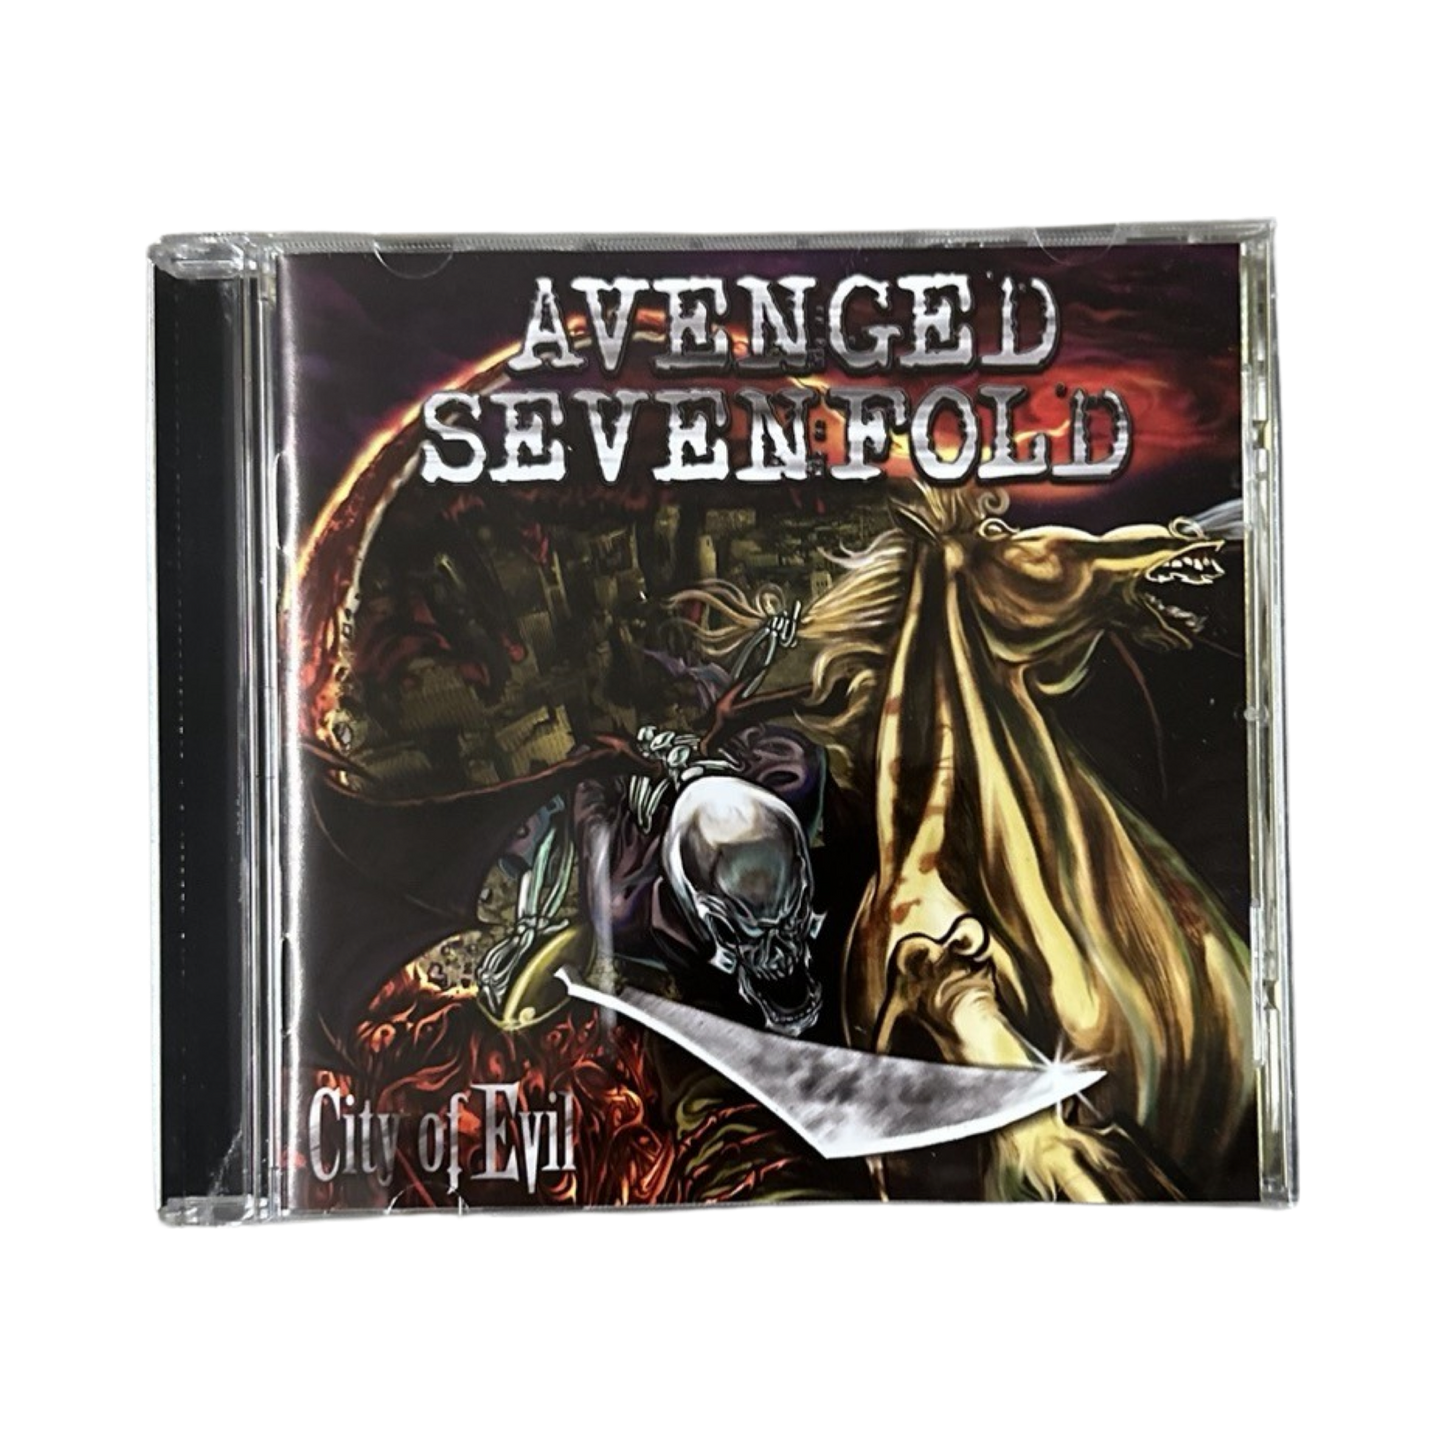 Avenged Sevenfold 'City of Evil' - CD